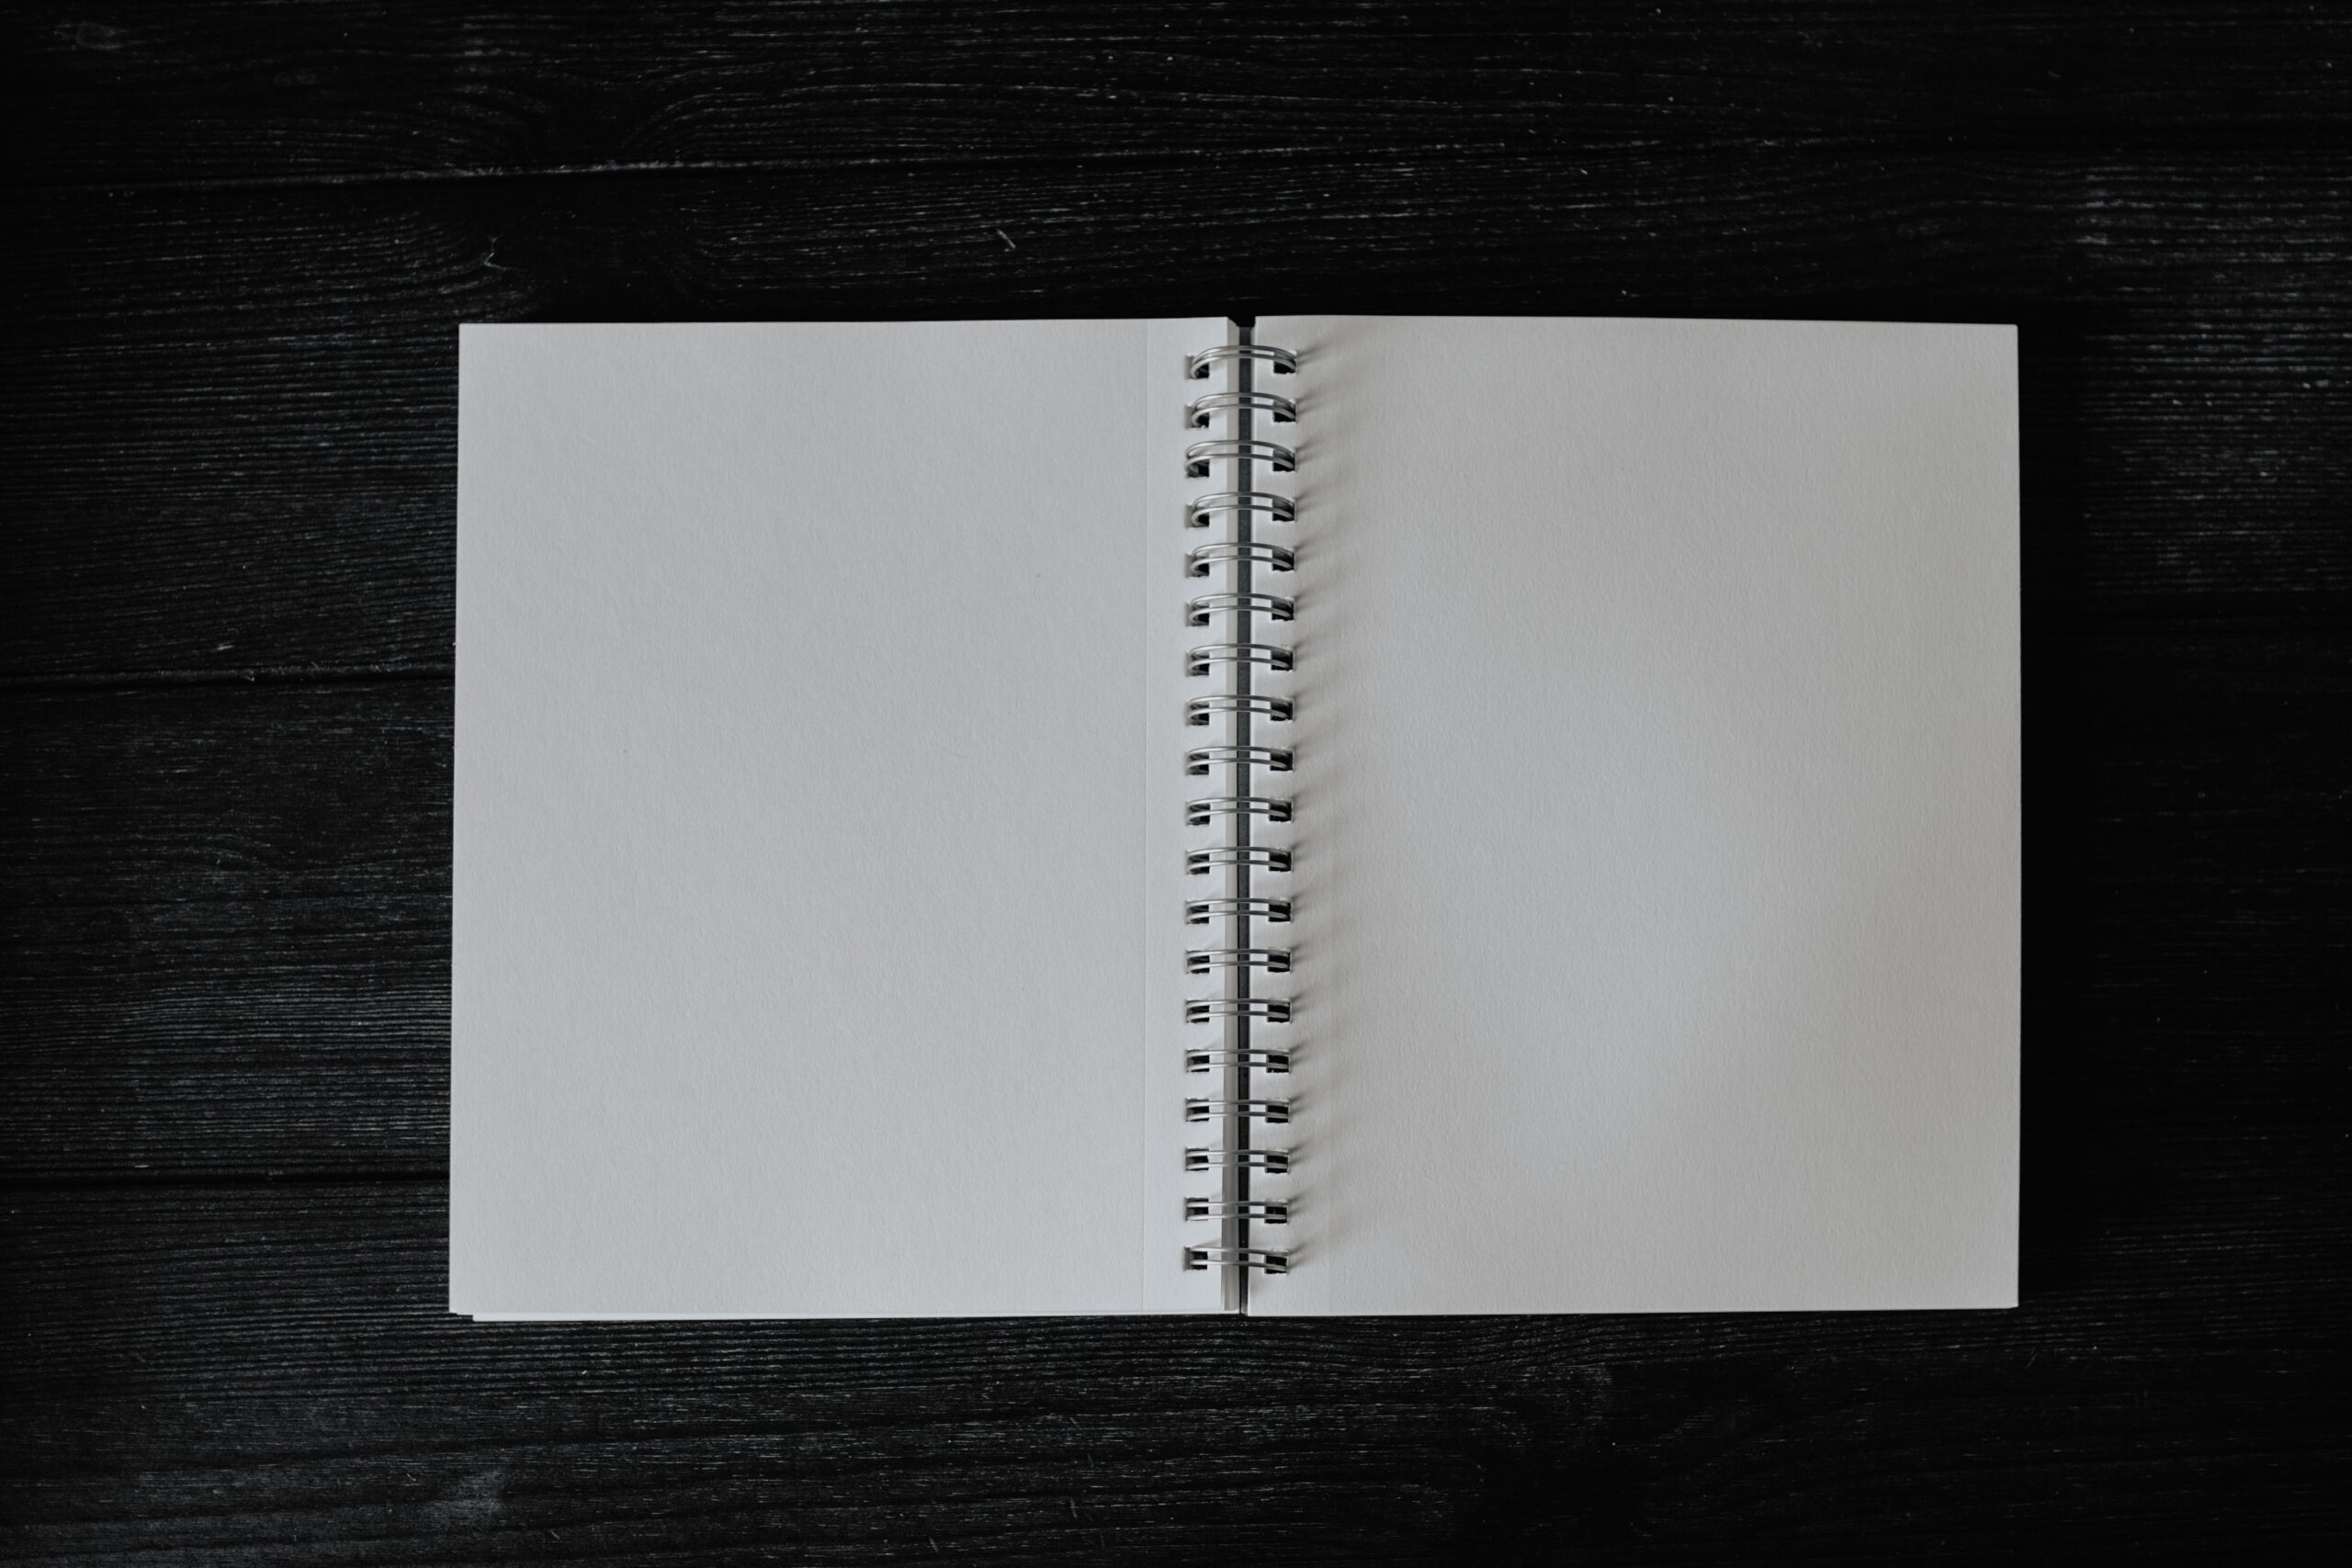 Blank spiral-bound notebook open on black background